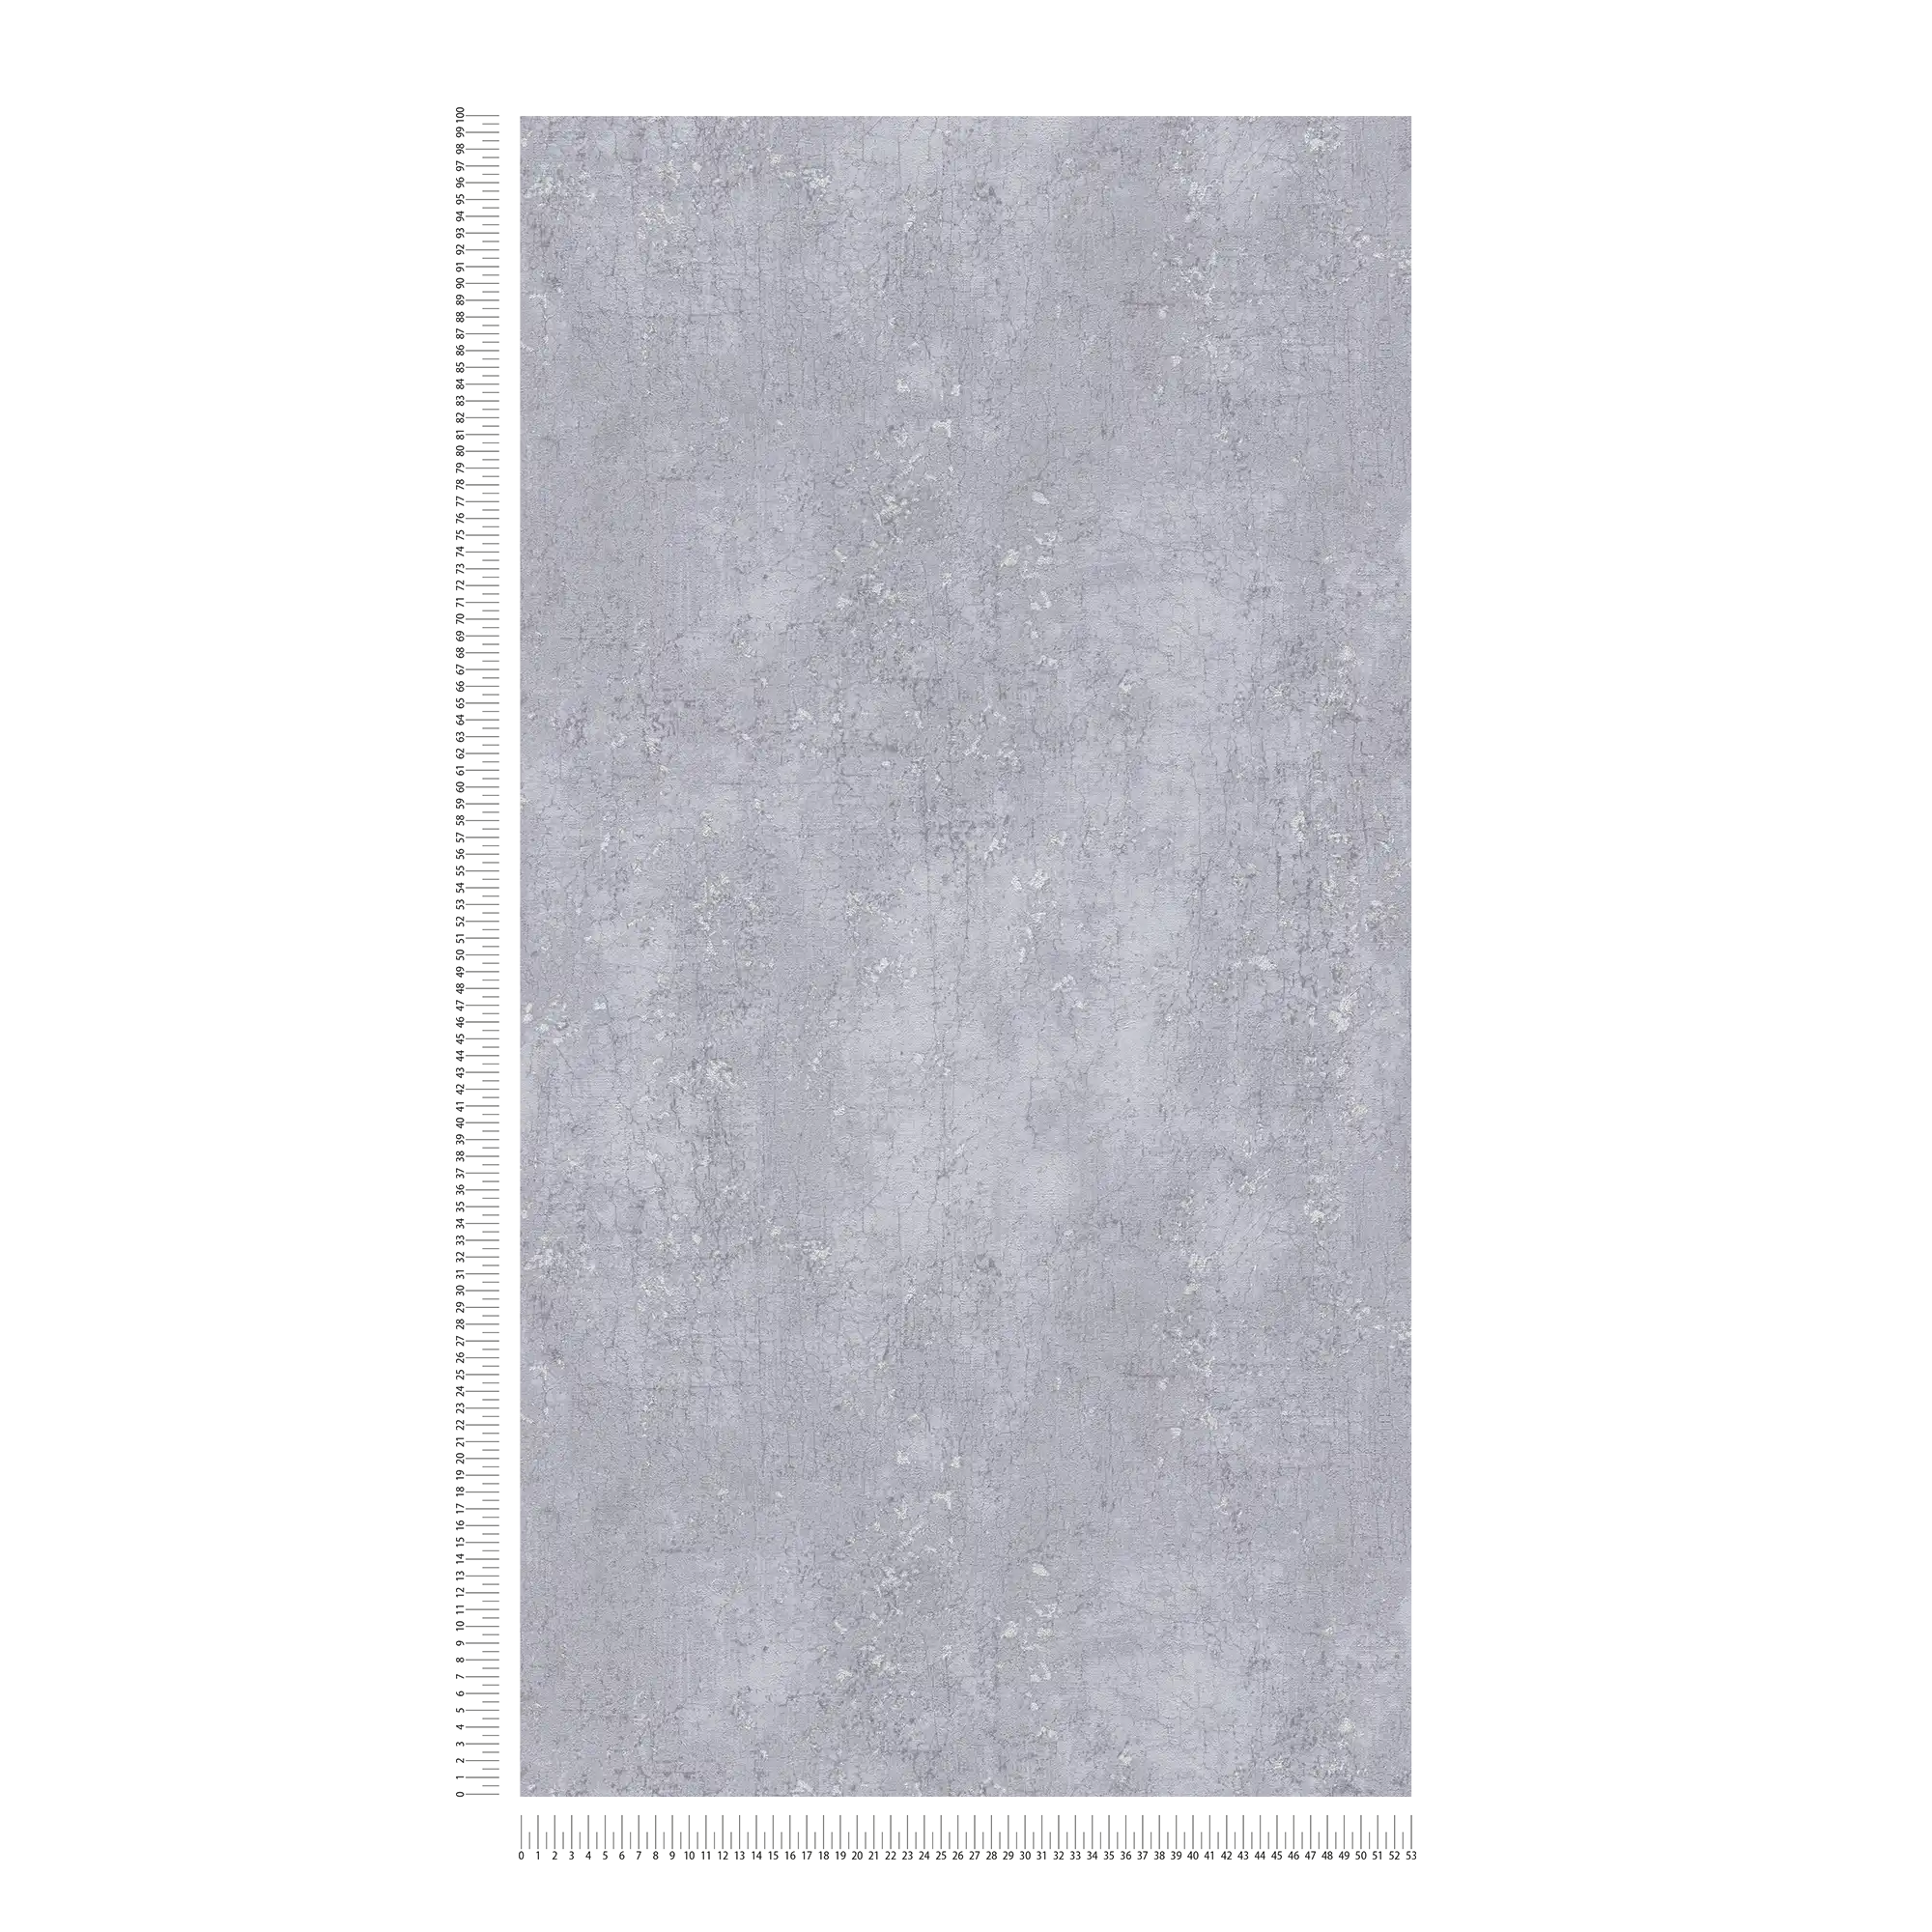             Carta da parati grigia effetto intonaco in look usato - grigio, metallizzato
        